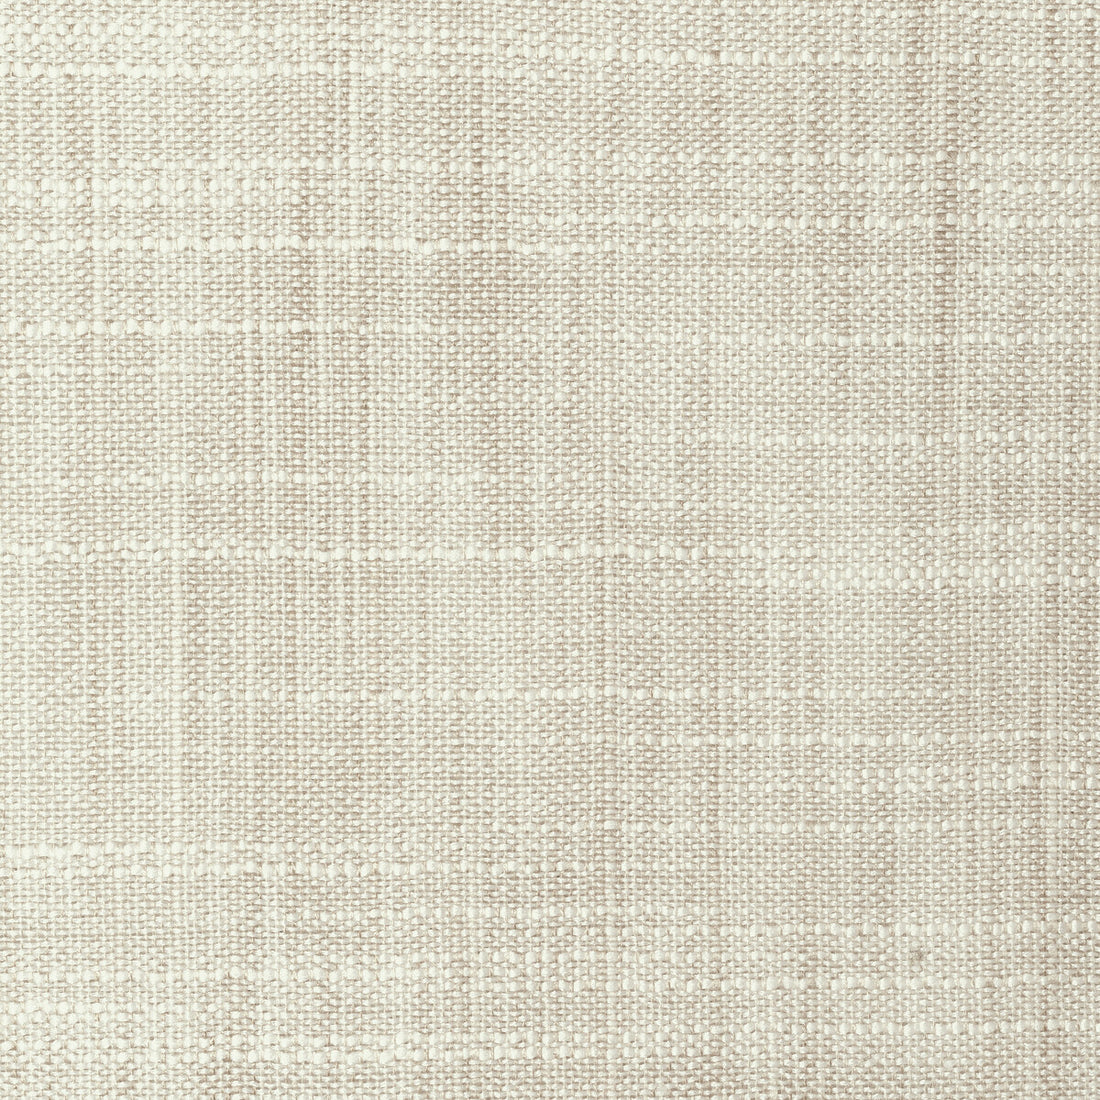 Kravet Basics fabric in 8813-111 color - pattern 8813.111.0 - by Kravet Basics